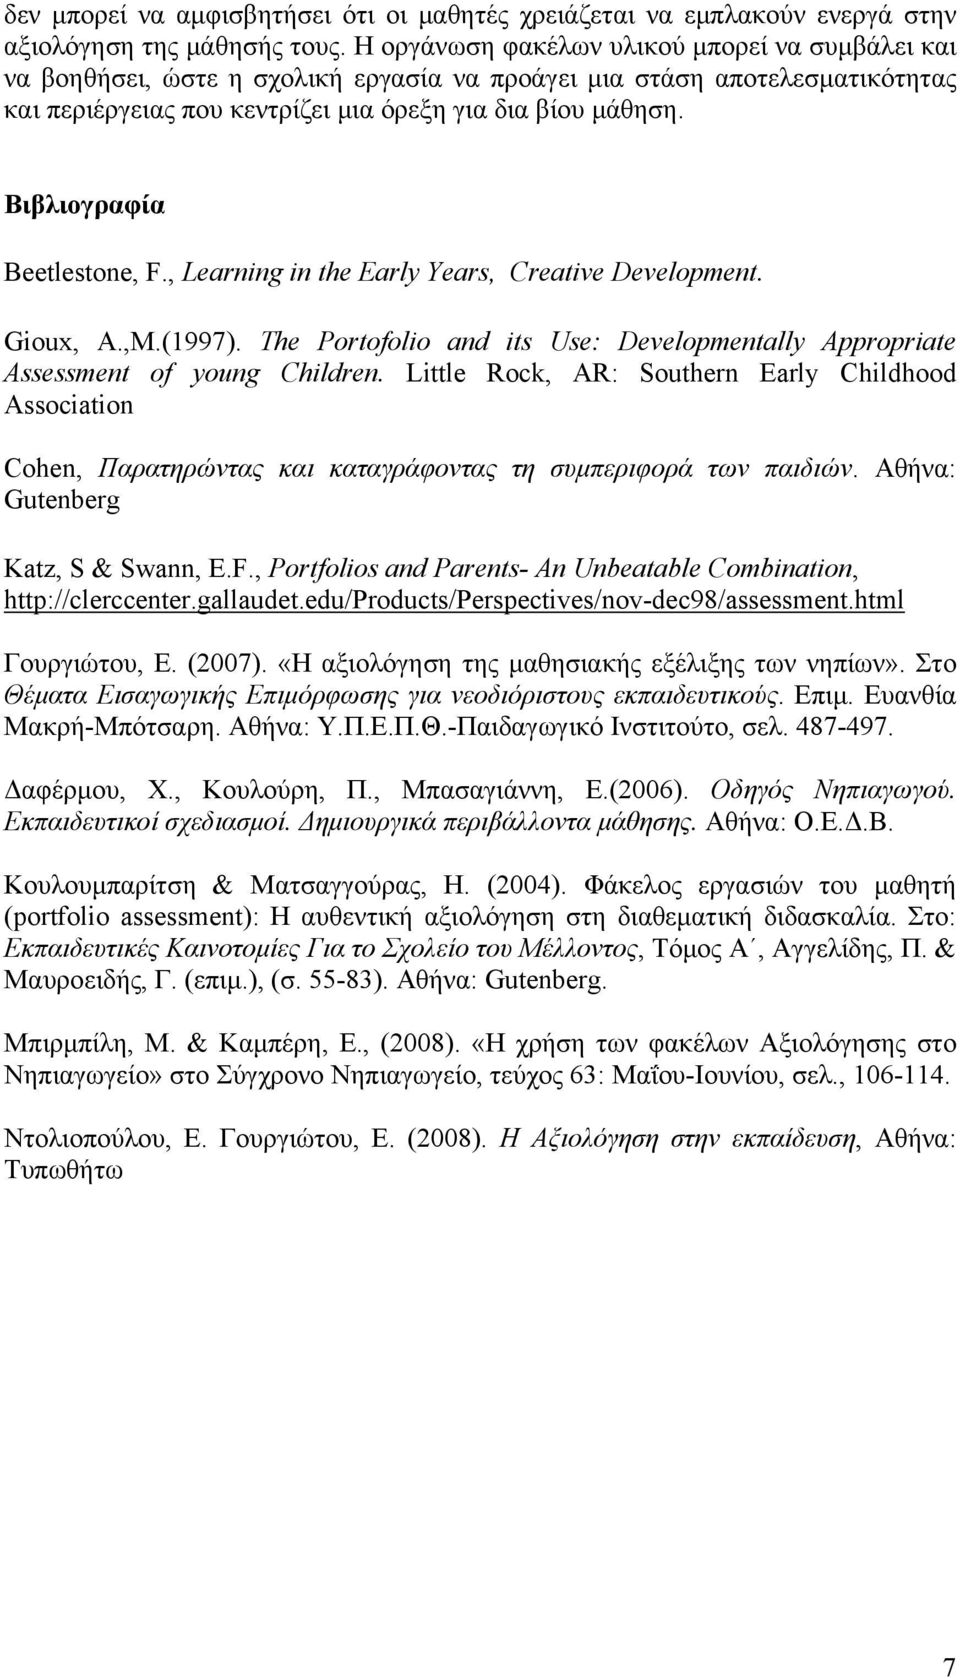 Βιβλιογραφία Beetlestone, F., Learning in the Early Years, Creative Development. Gioux, A.,M.(1997). The Portofolio and its Use: Developmentally Appropriate Assessment of young Children.